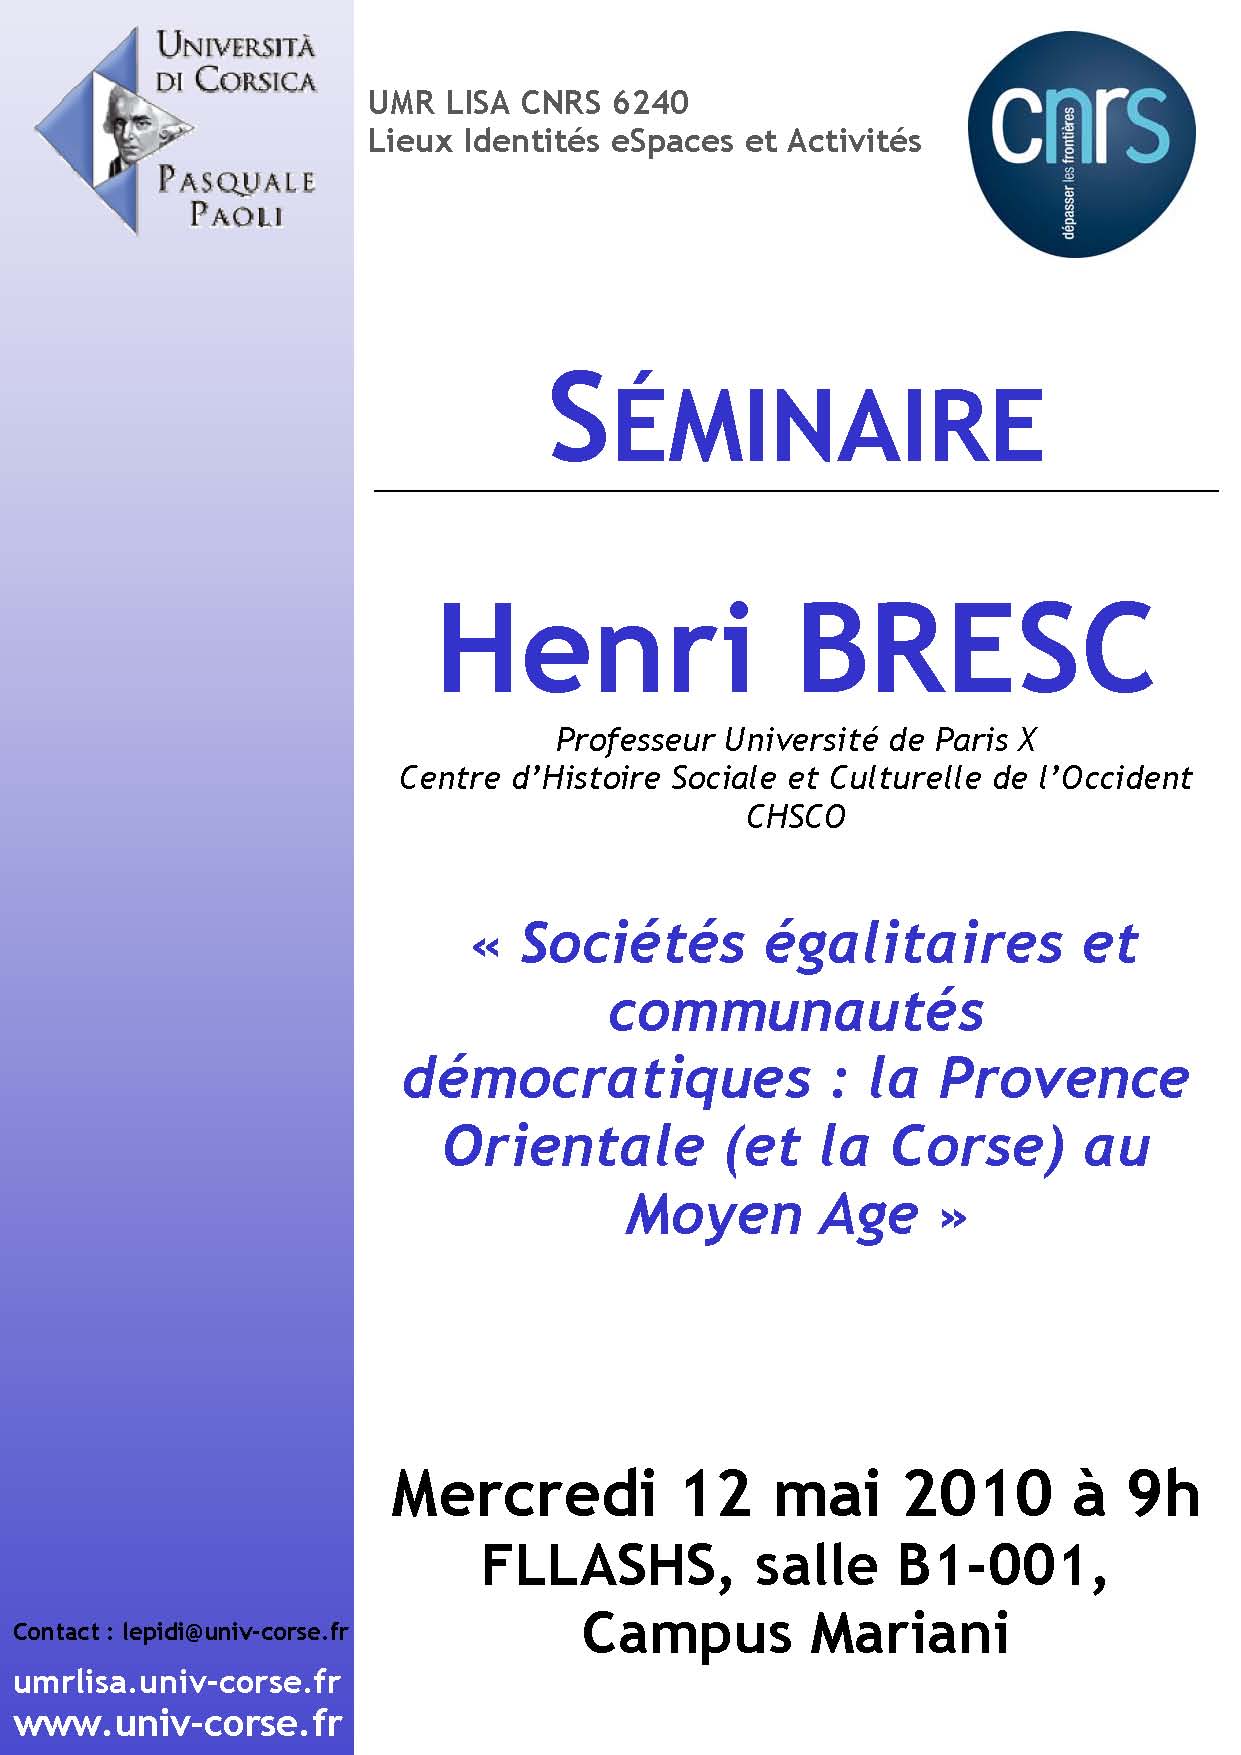 Séminaire Henri Bresc - Sociétés égalitaires et communautés démocratiques, la Provence orientale (et la Corse) au Moyen Age